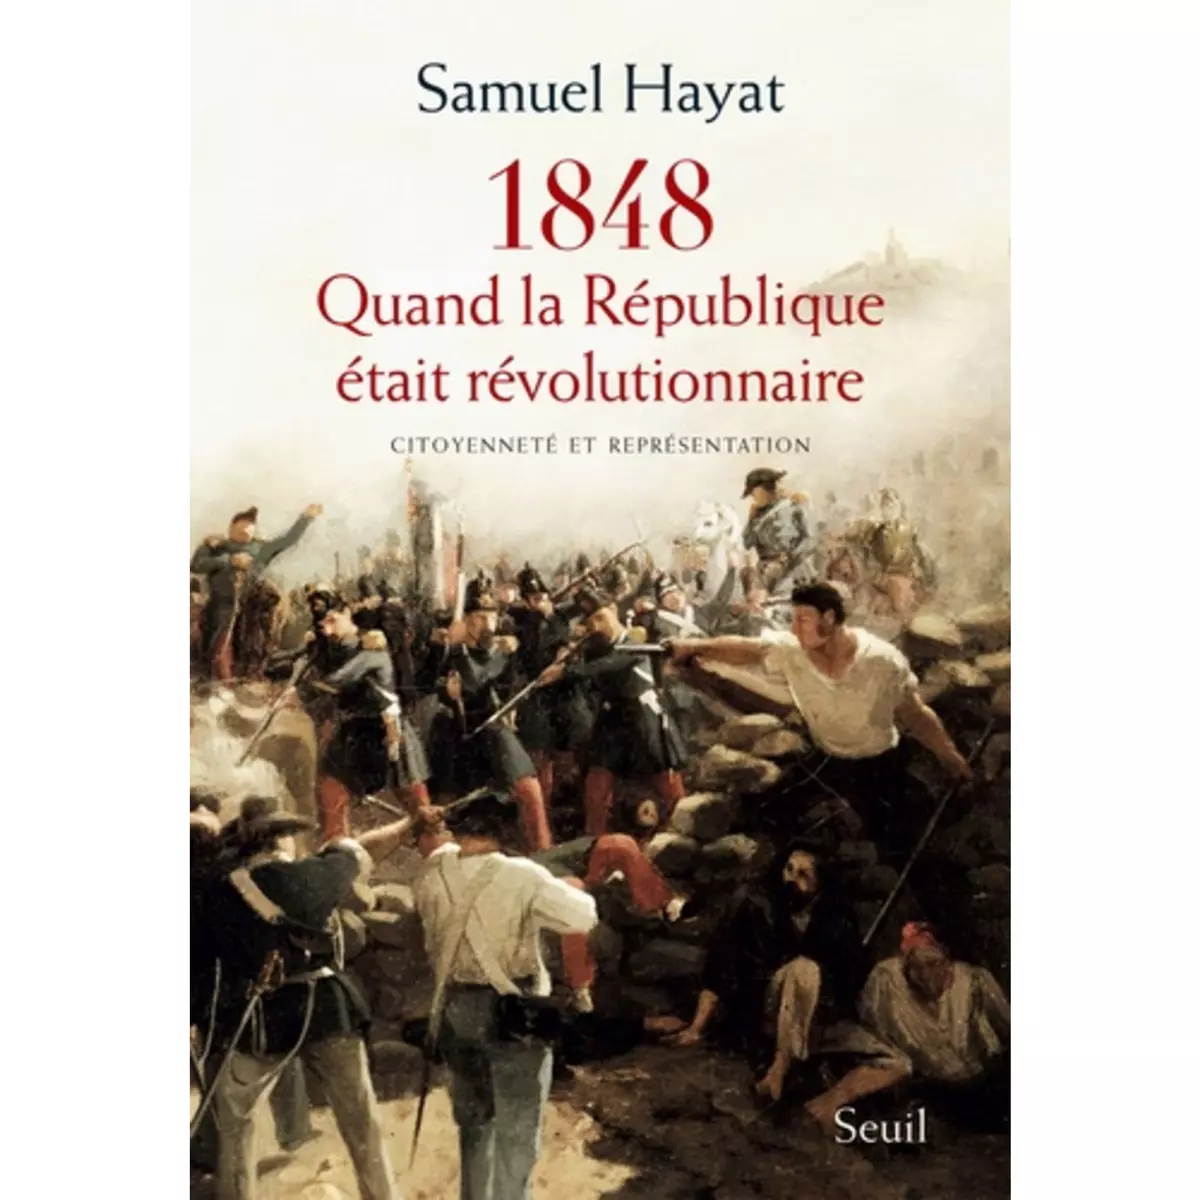  QUAND LA REPUBLIQUE ETAIT REVOLUTIONNAIRE. CITOYENNETE ET REPRESENTATION EN 1848, Hayat Samuel